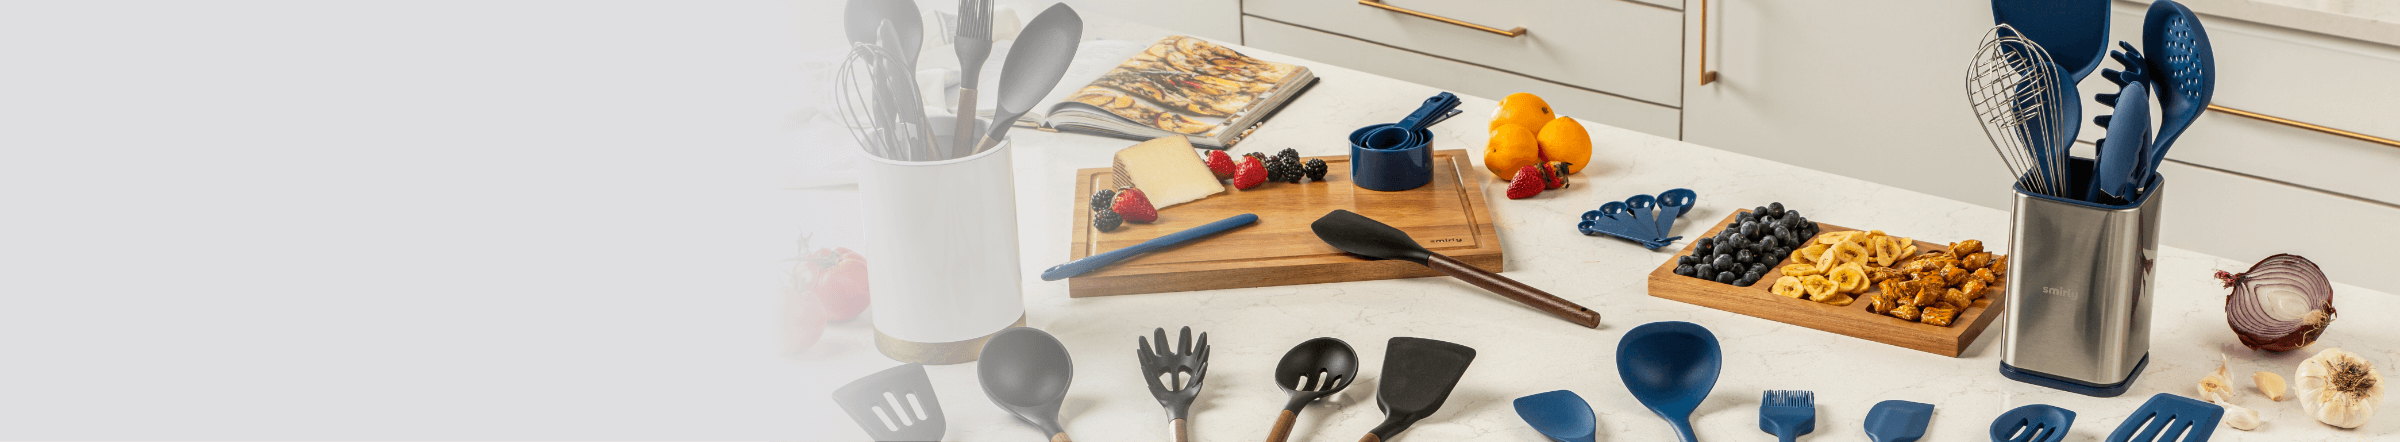 Silicone Cooking Utensil Kitchen Utensils Set – Chef Sheilla